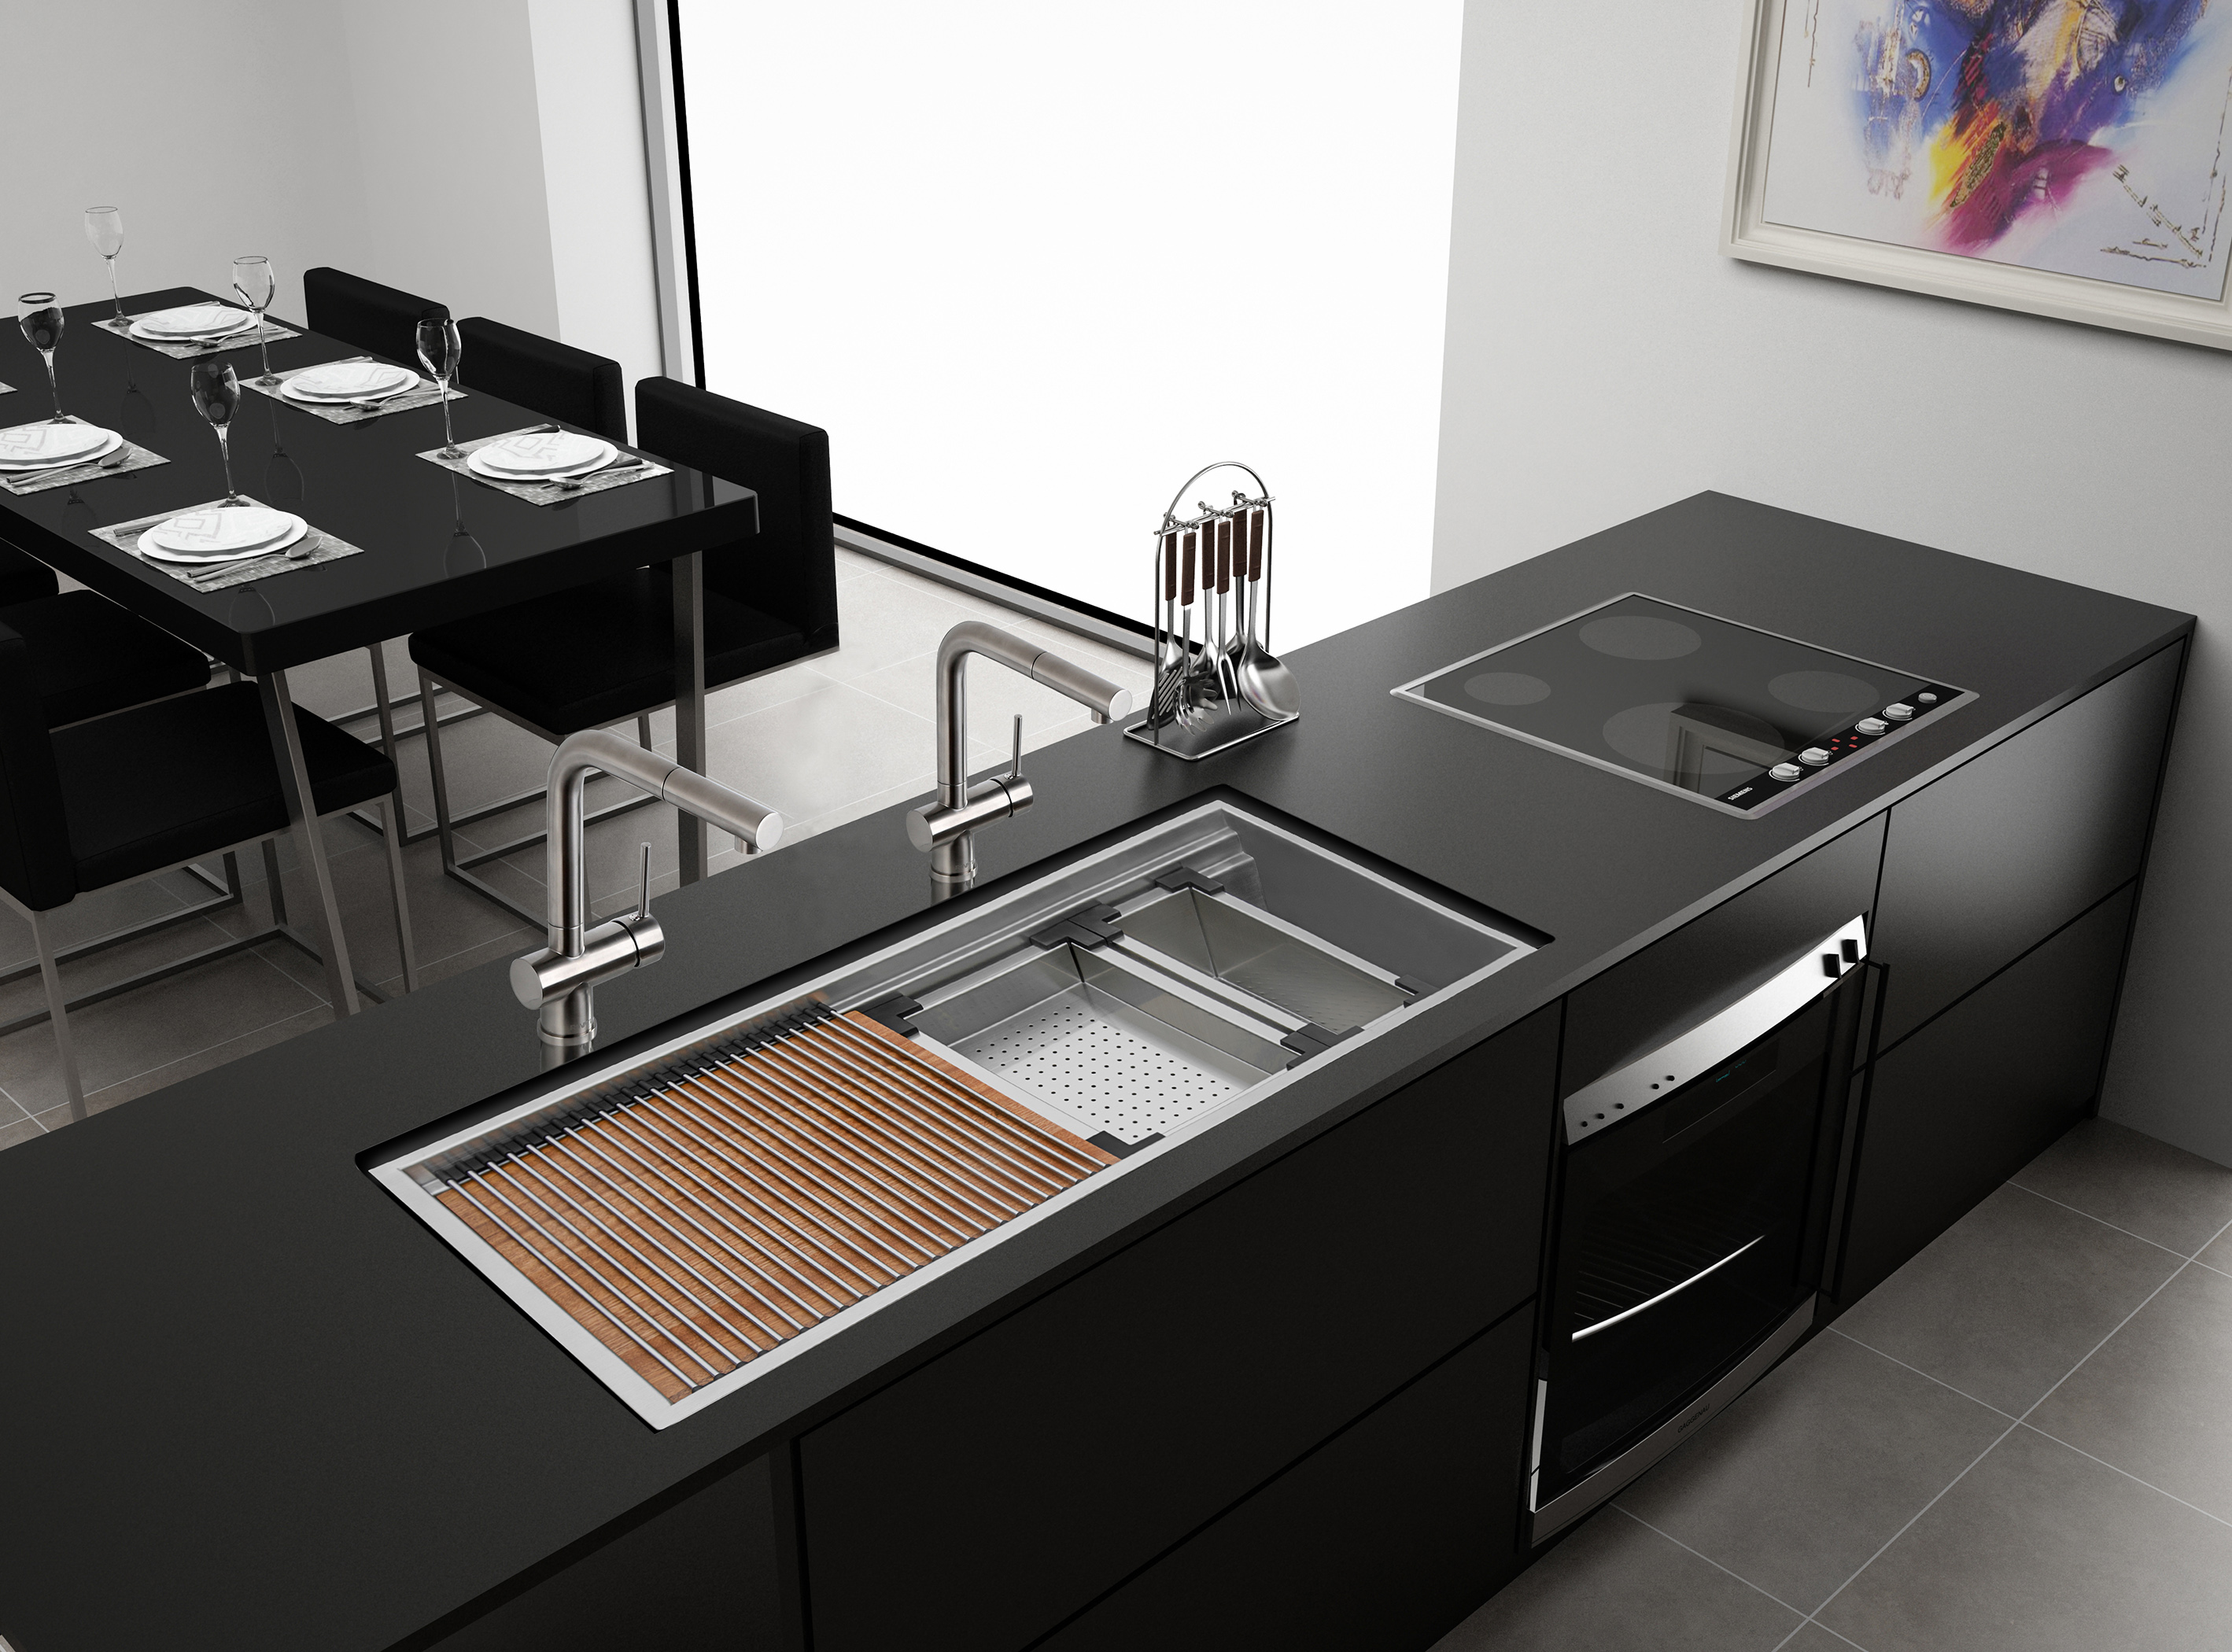 smart create imagine kitchen sink